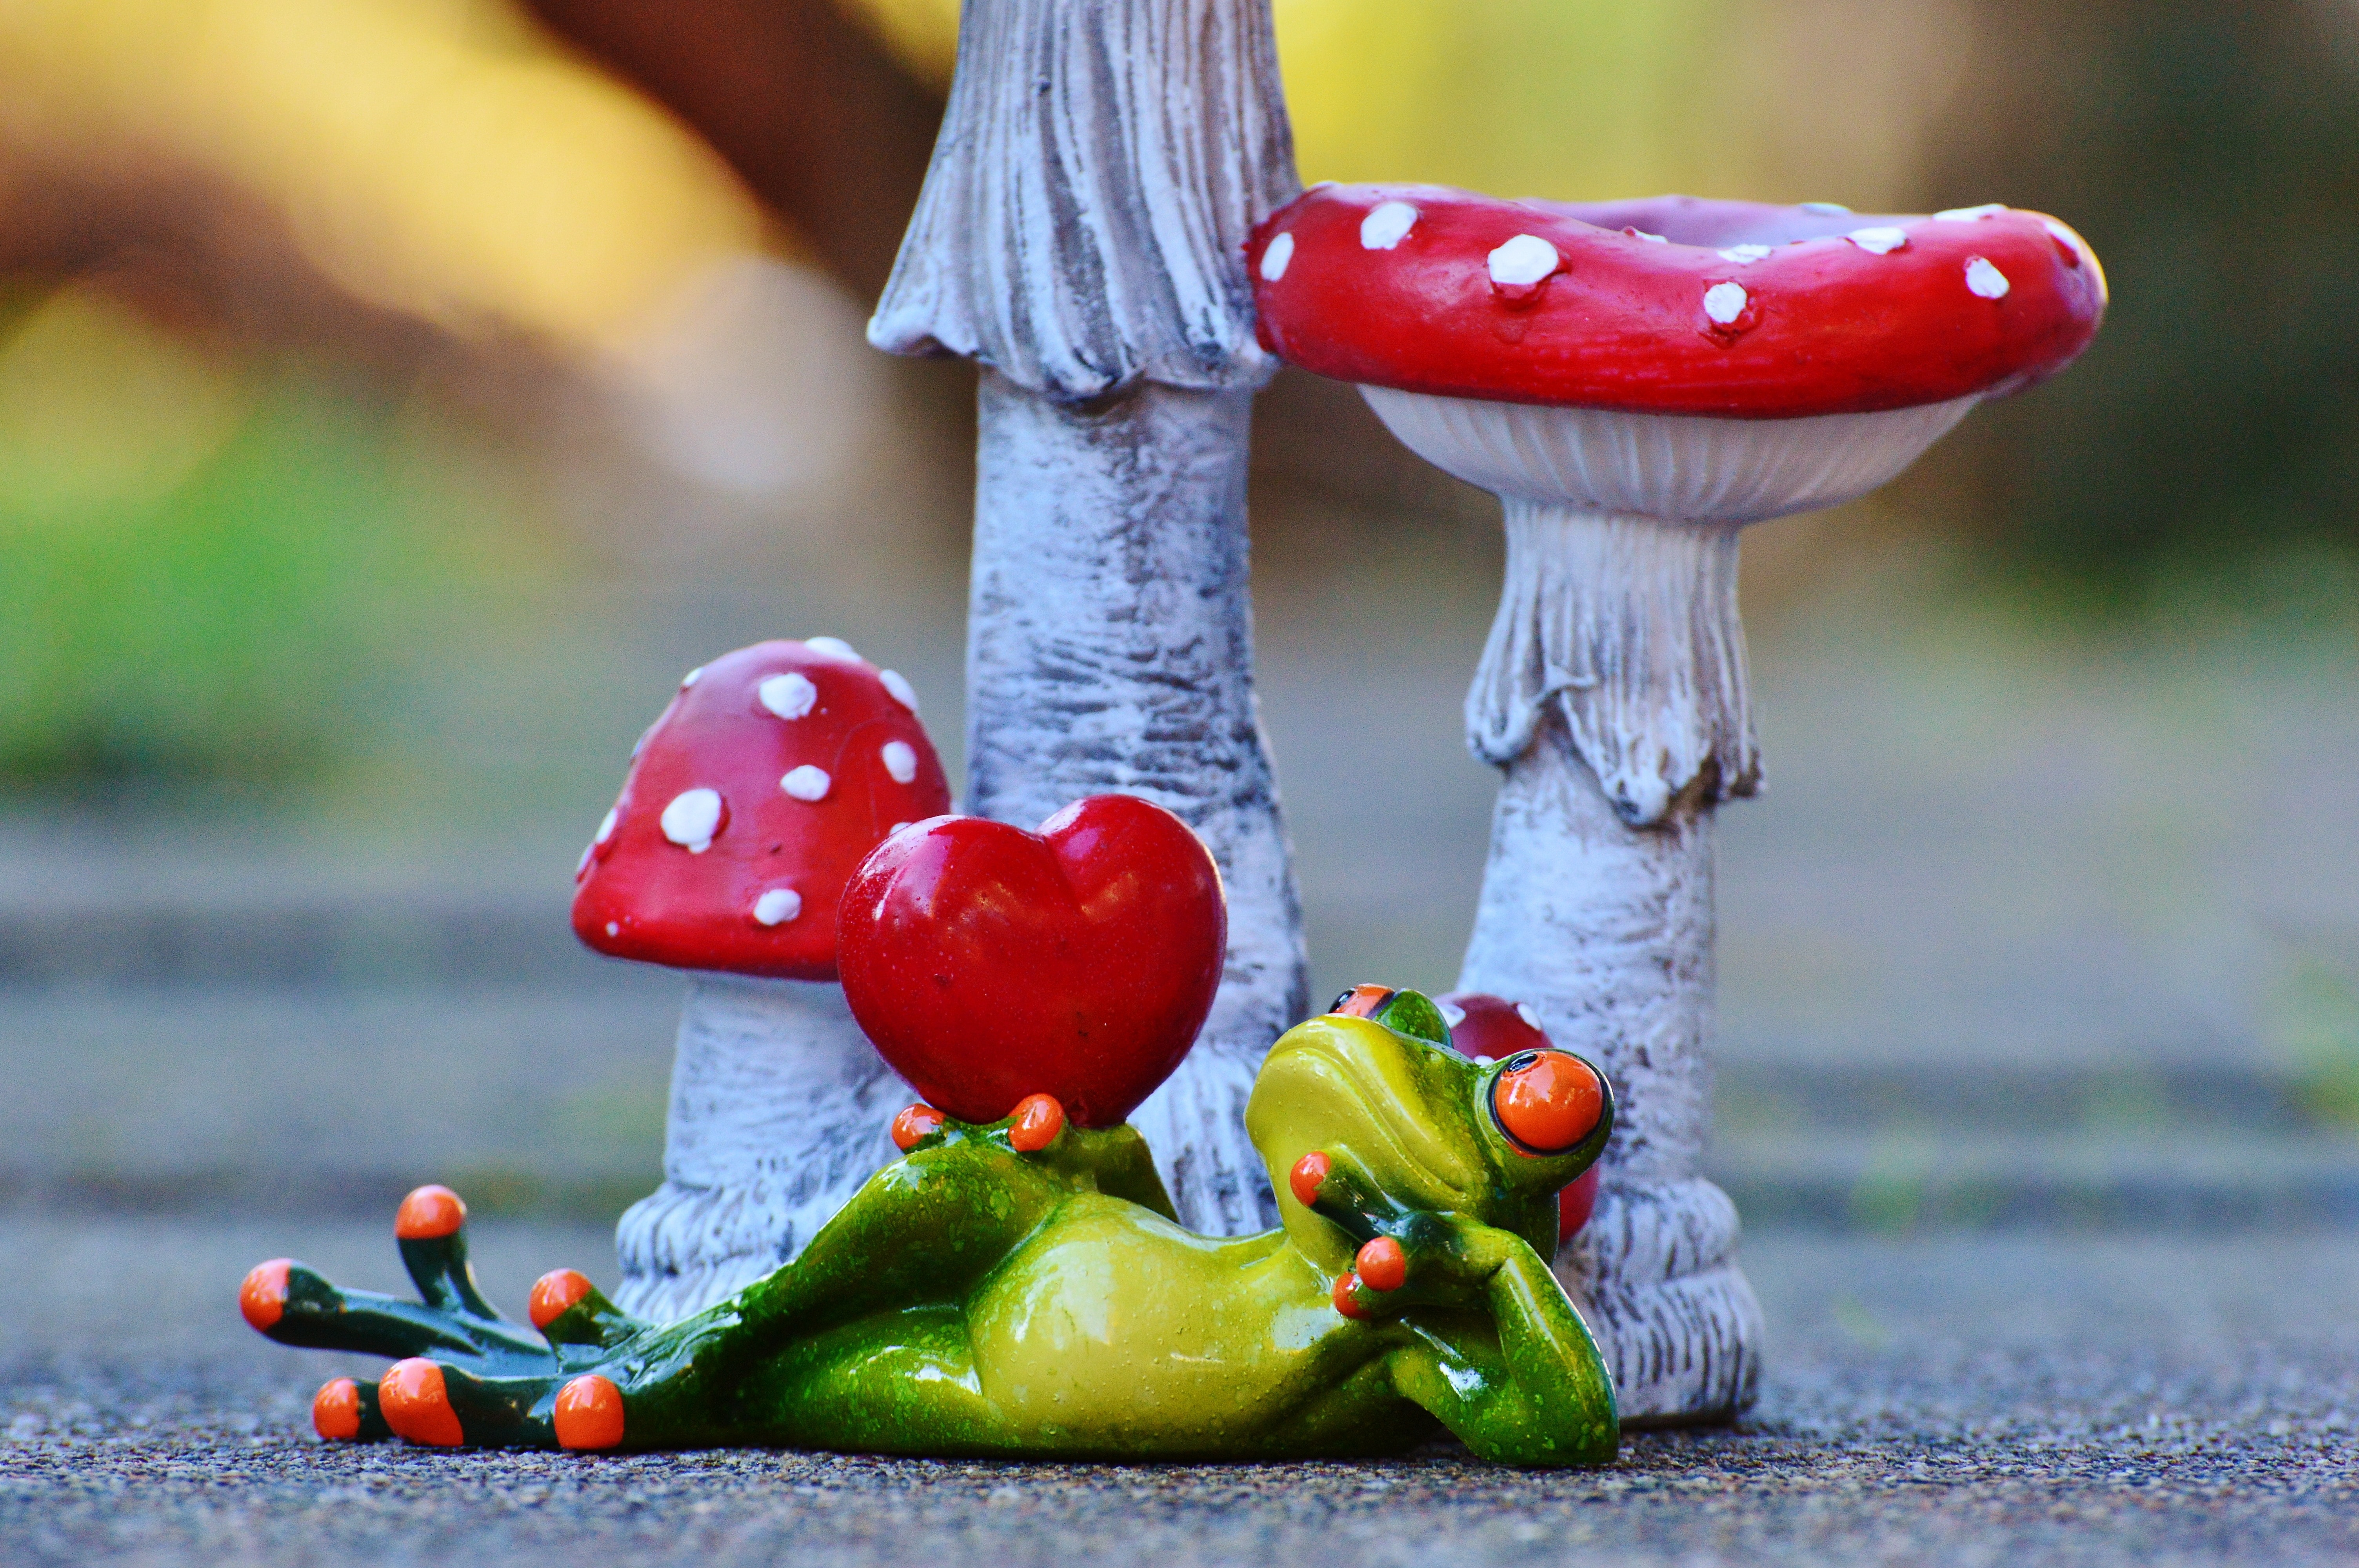 mushroom and frog ceramic figurine free image | Peakpx